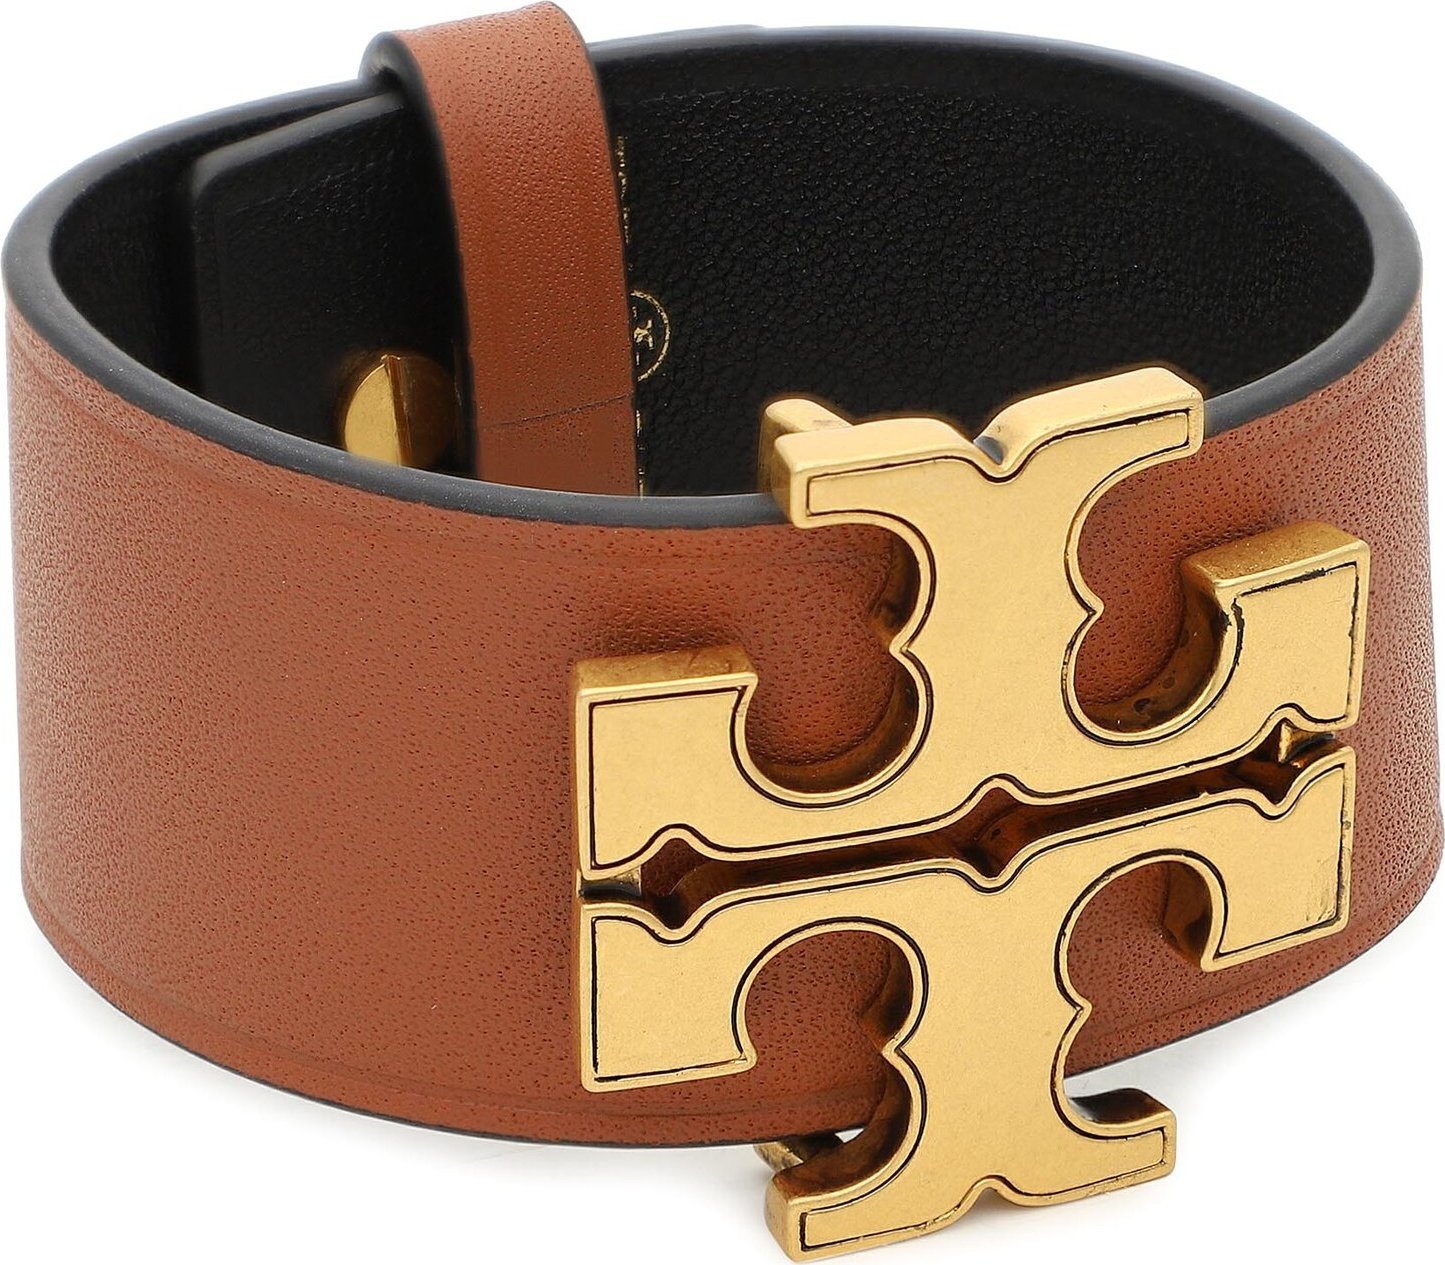 Náramek Tory Burch Eleanor Leather Bracelet 143767 Antique Brass/Classic Cuoio 960